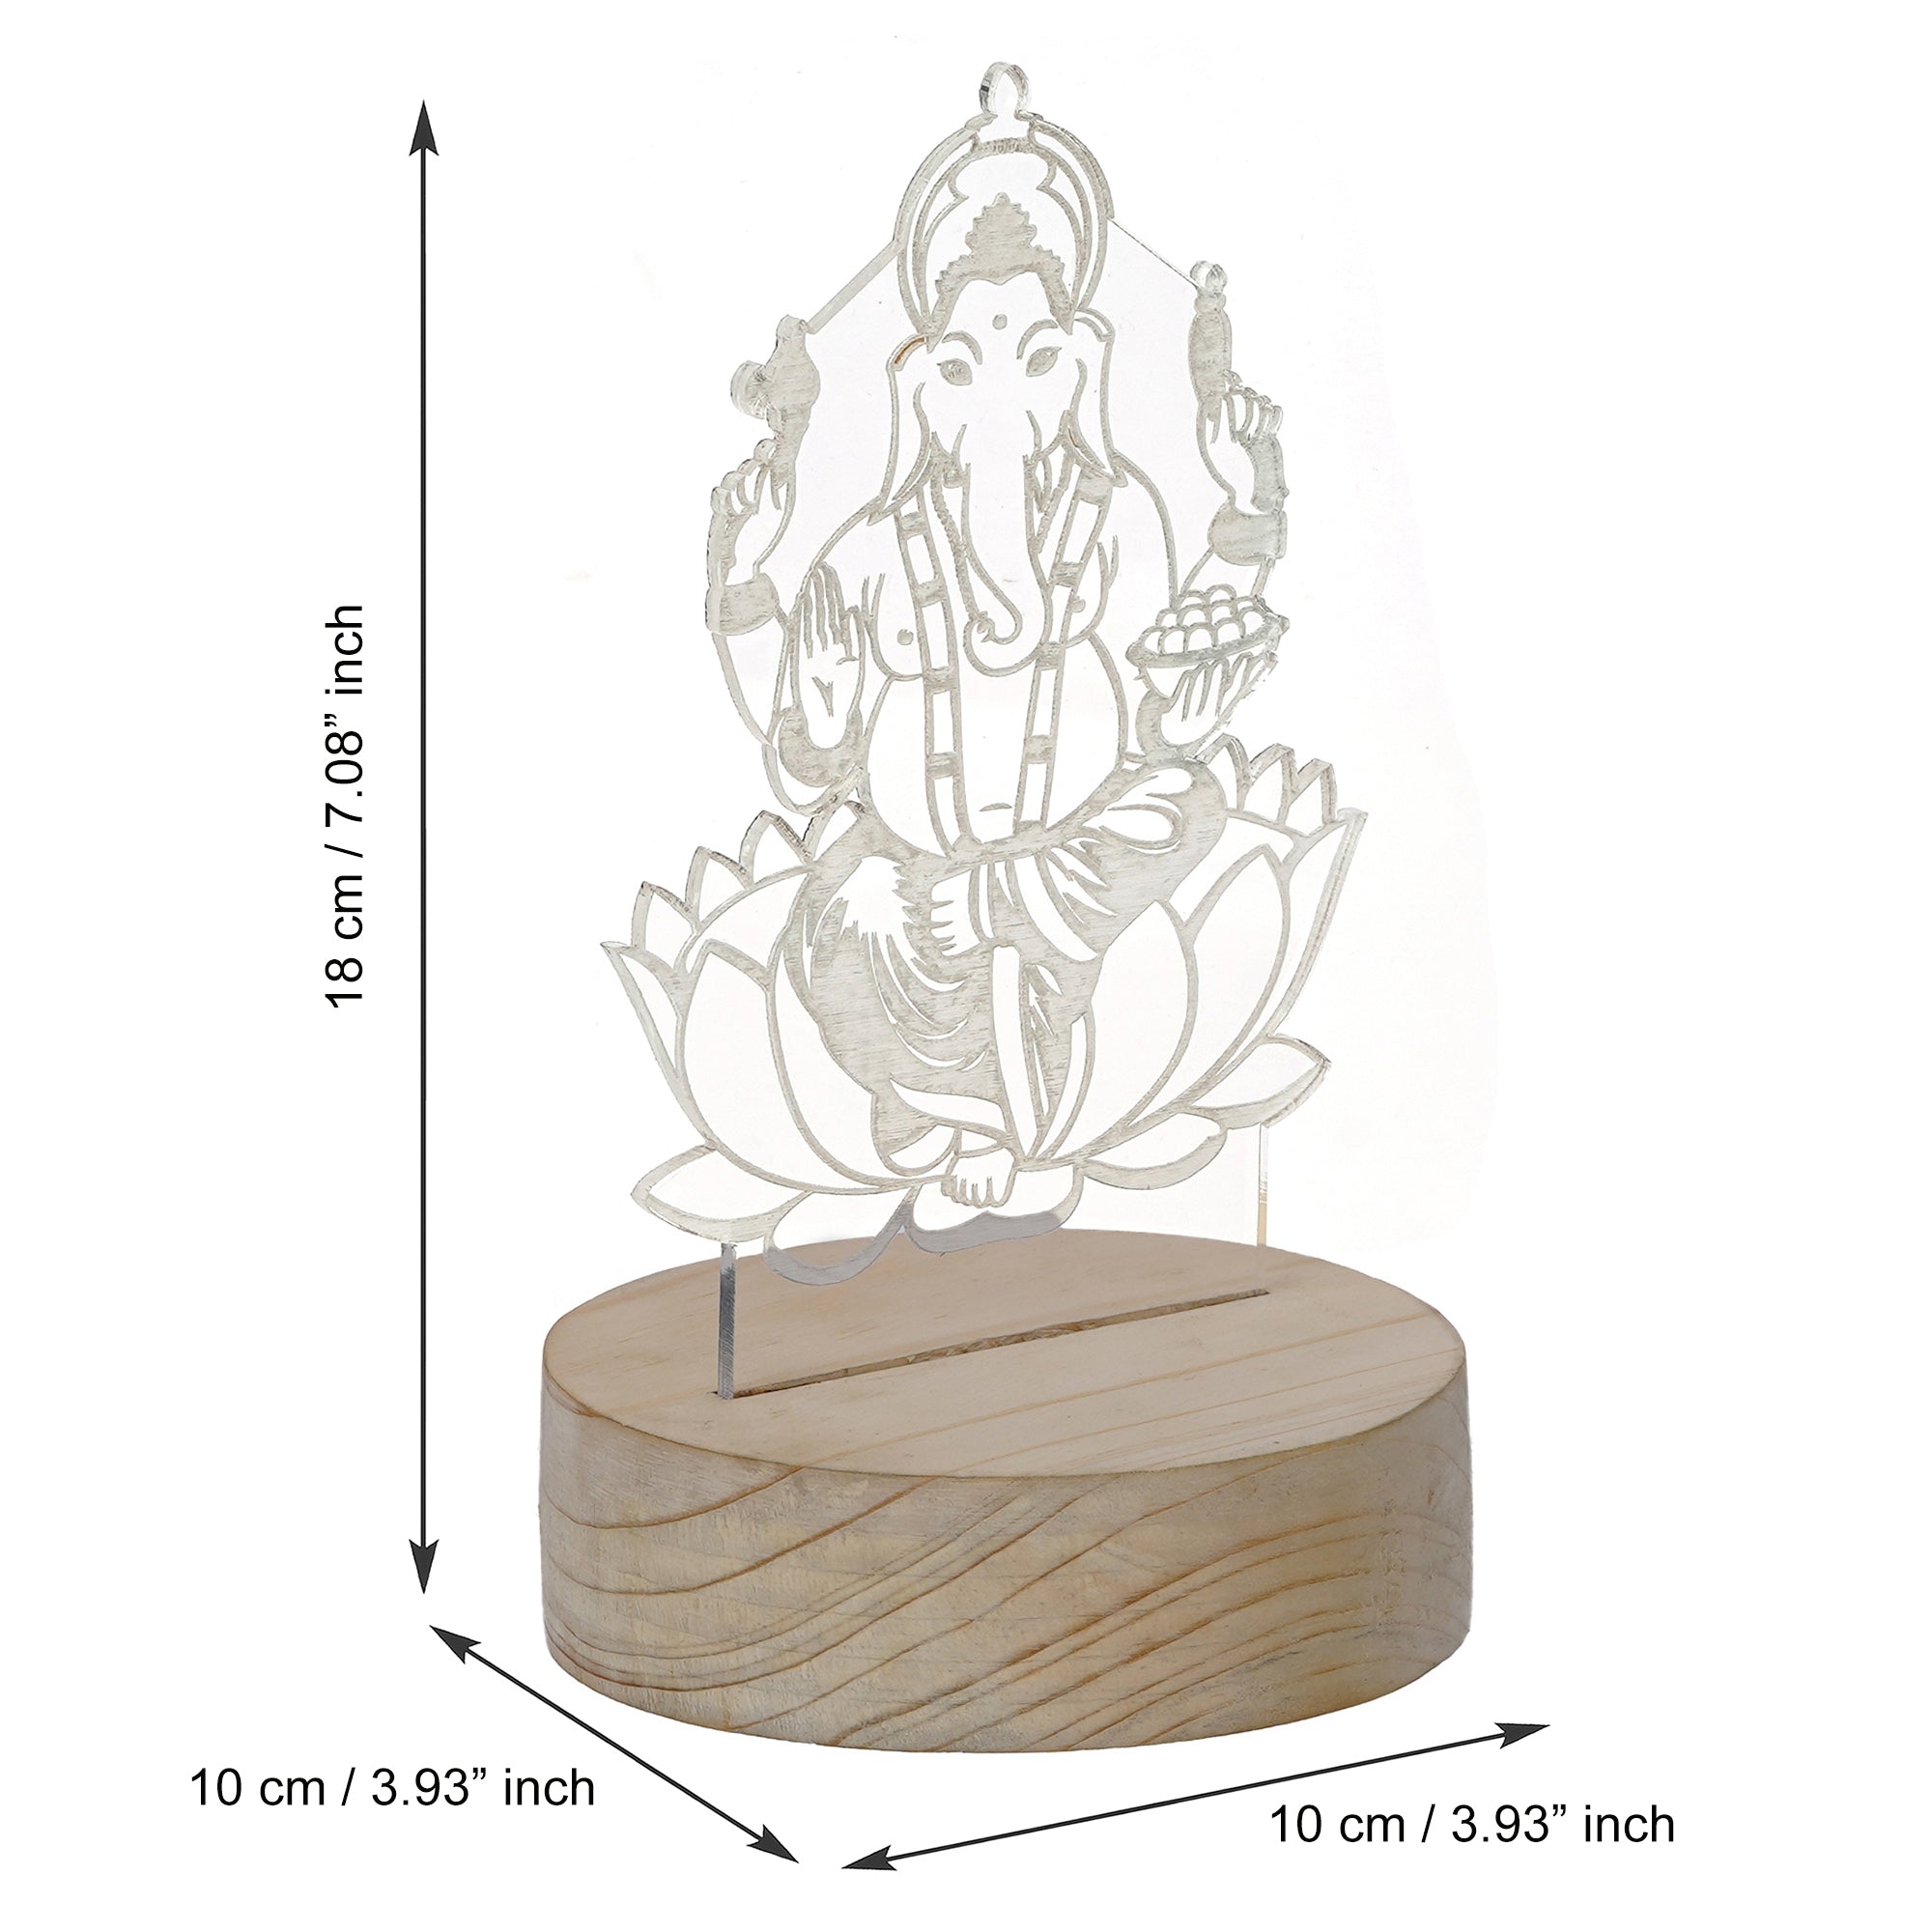 Lord Ganesha Design Carved on Acrylic & Wood Base Night Lamp 3